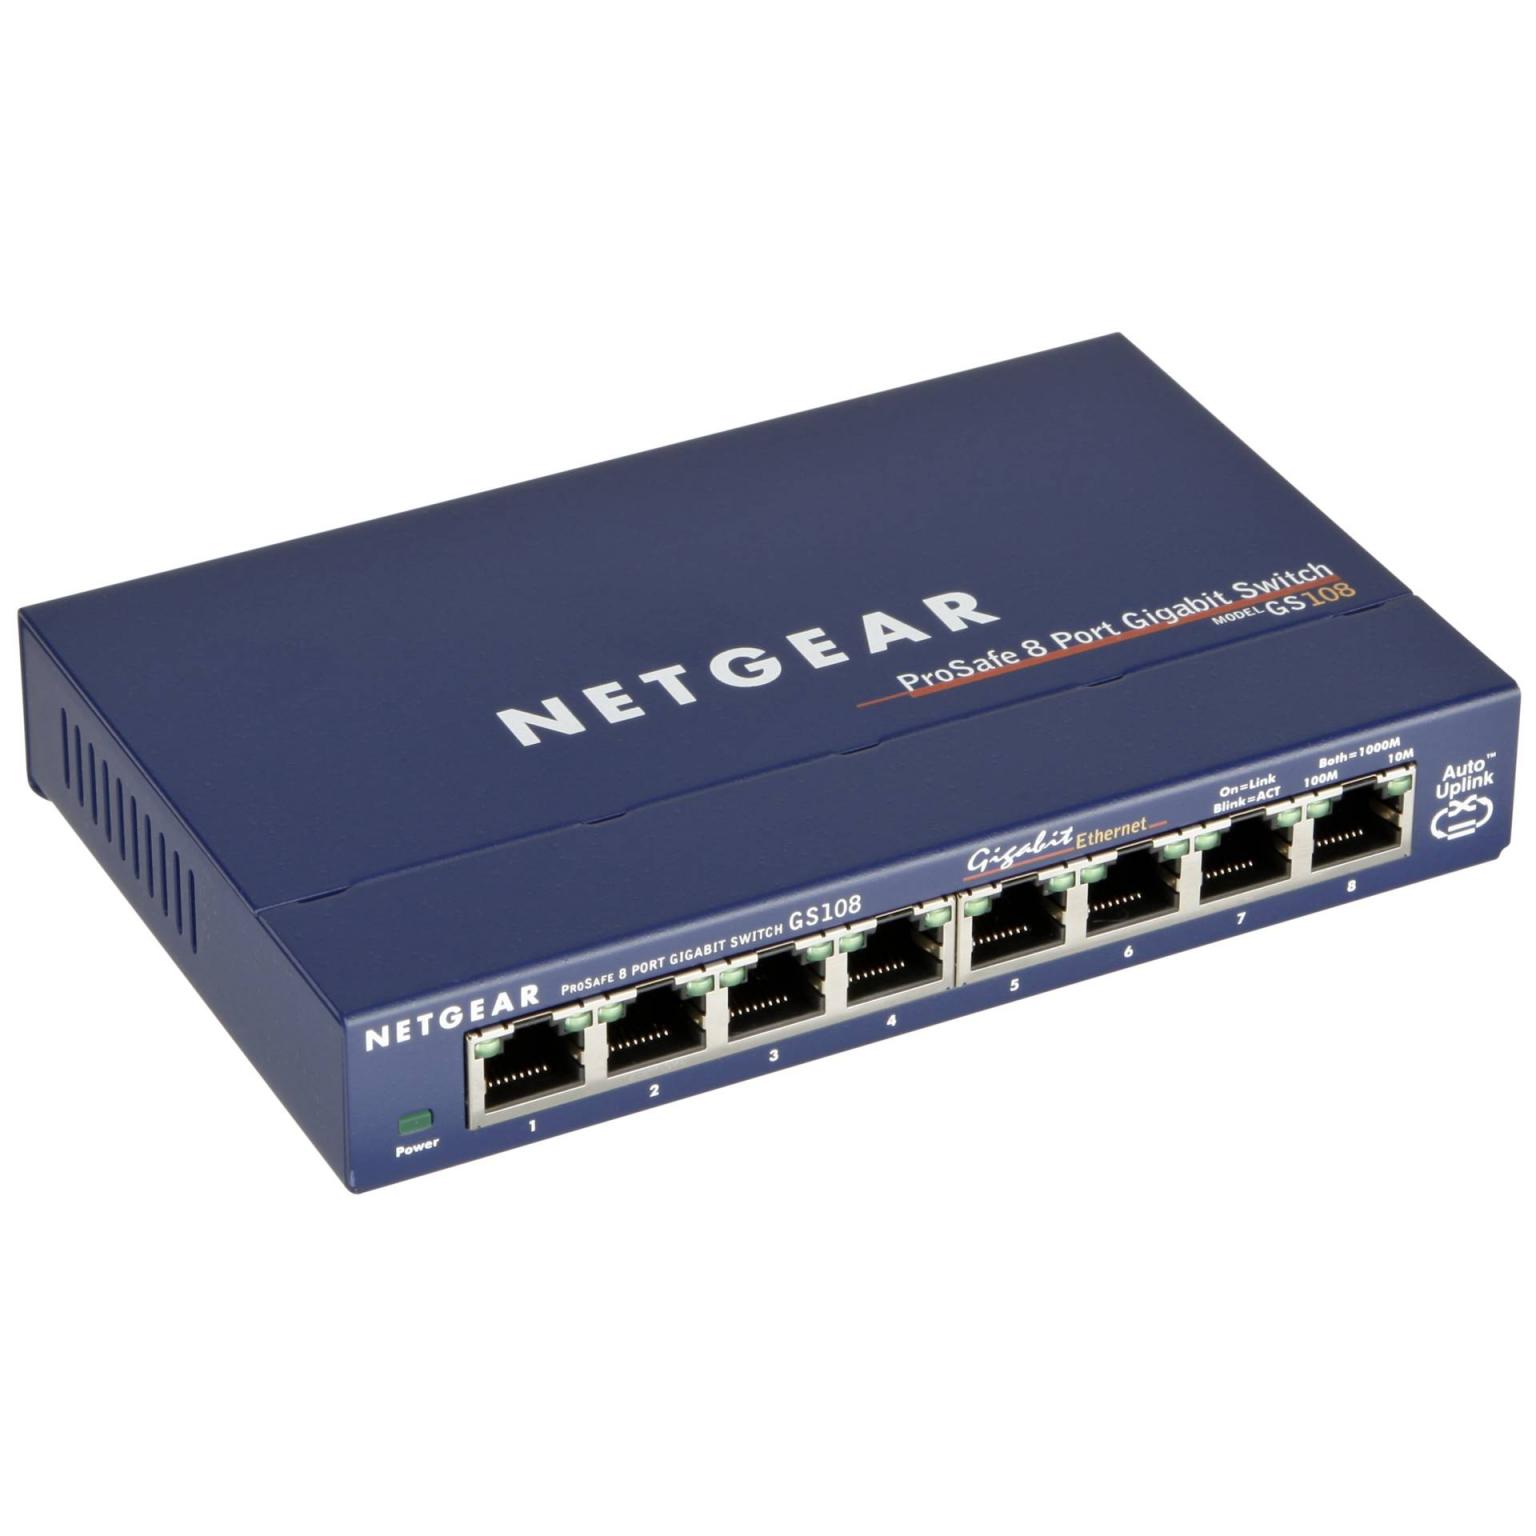 Netzwerk Switch mit 8 Anschlüsse - Netgear